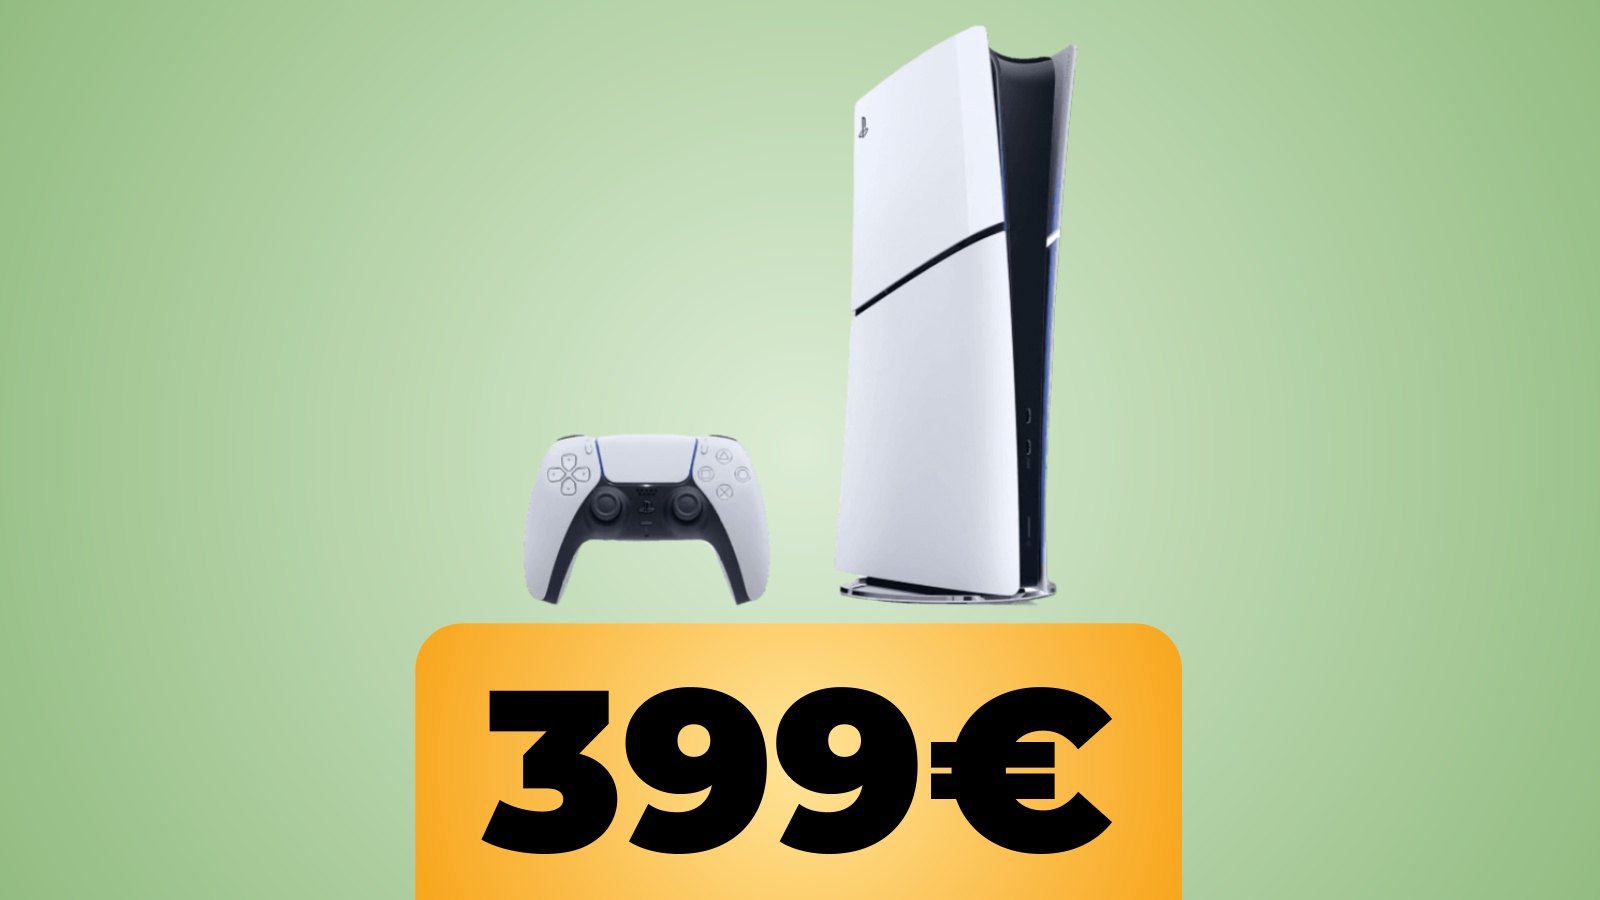 PS5 Slim Digital in sconto su Amazon Italia al prezzo minimo storico